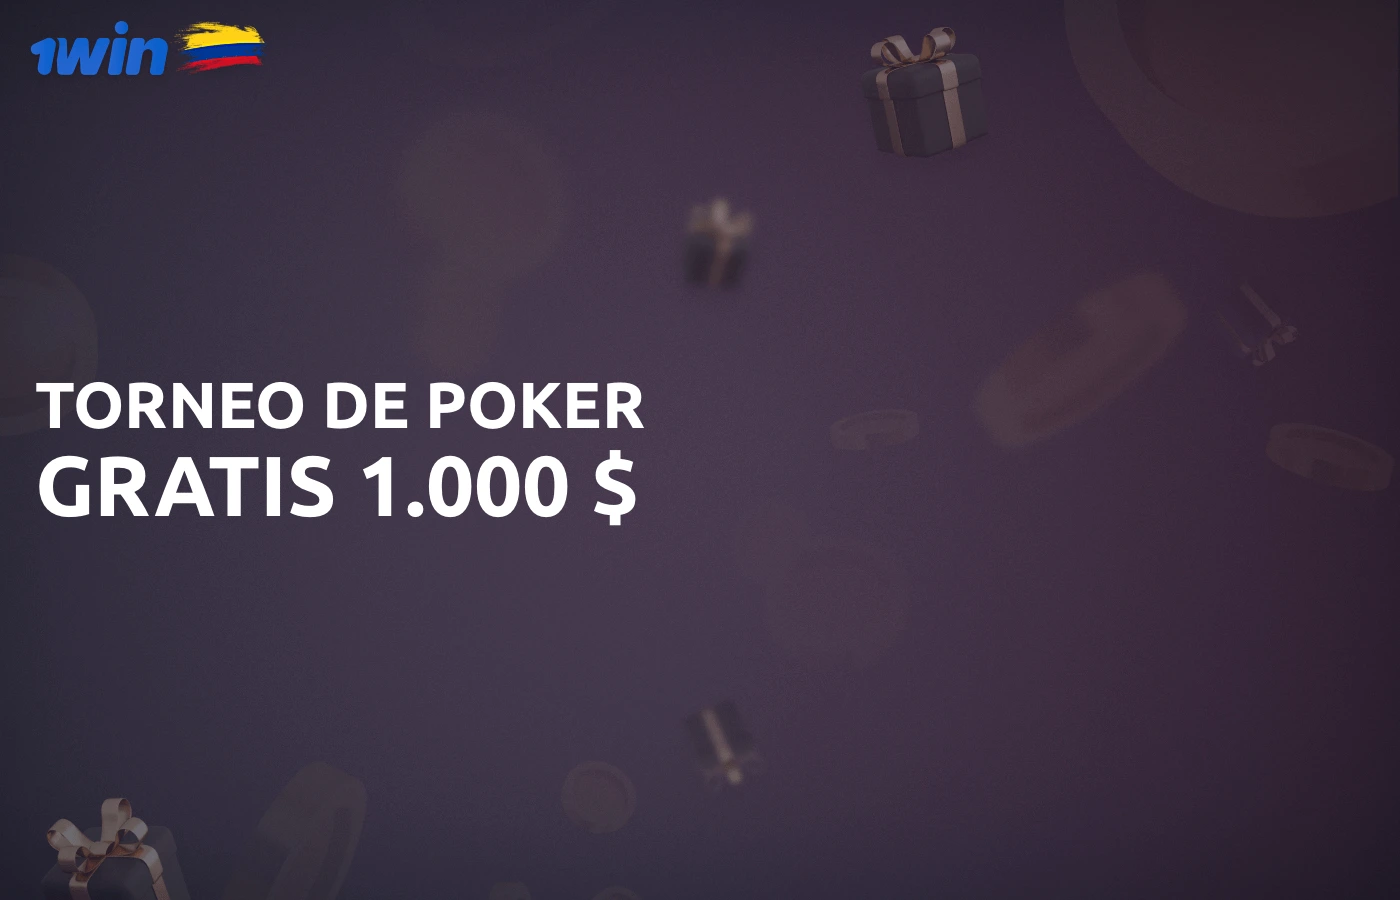 Los usuarios de 1win pueden participar en un torneo de póquer con premio en metálico